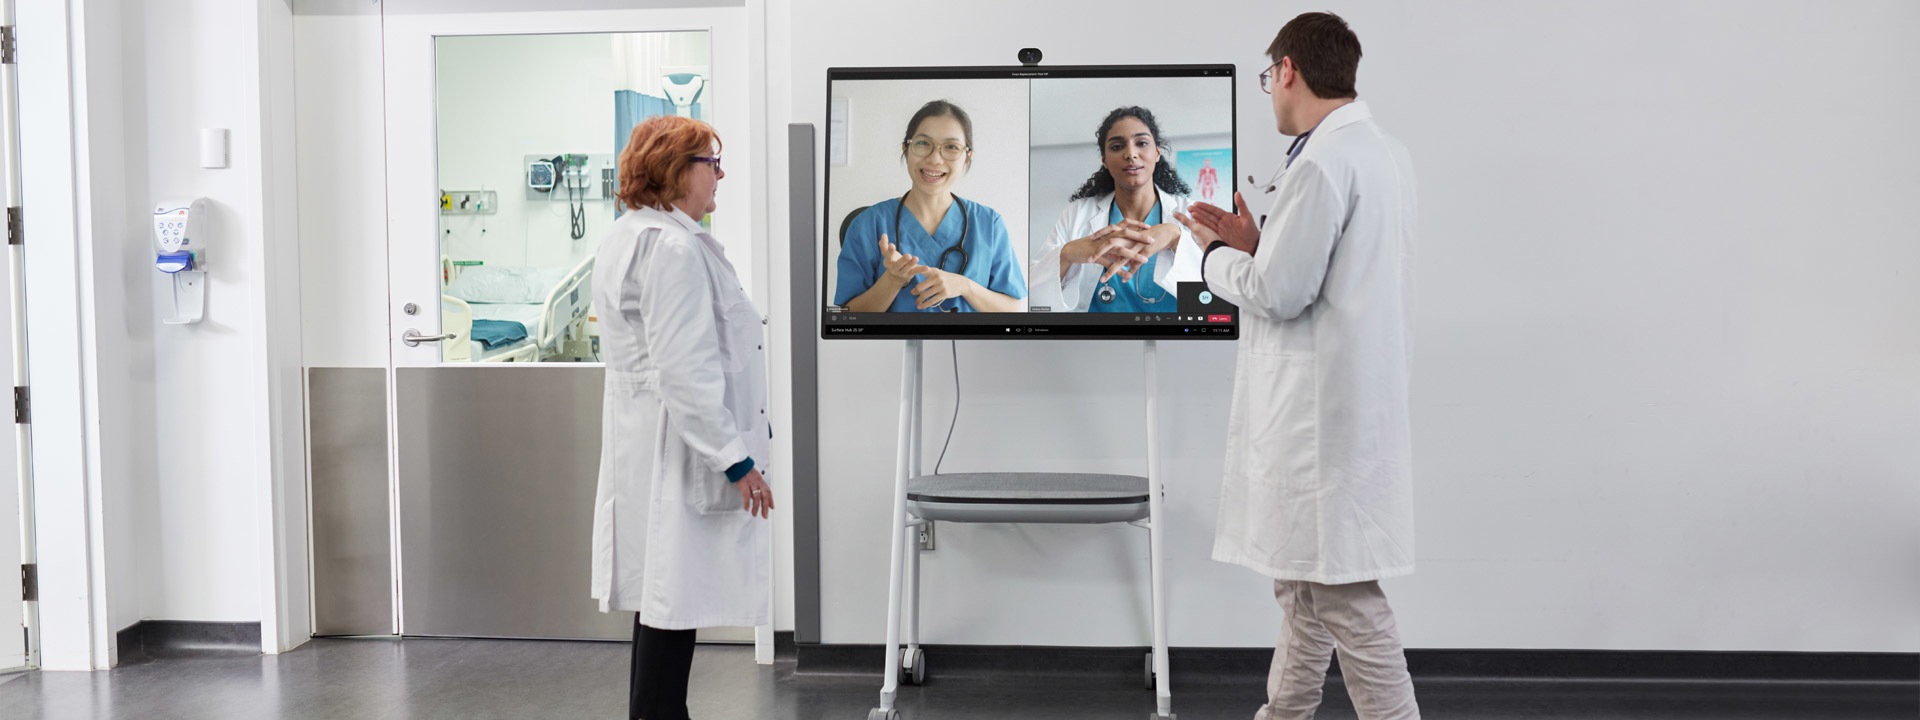 Twee medische professionals nemen deel aan een Teams-videogesprek in een ziekenhuis